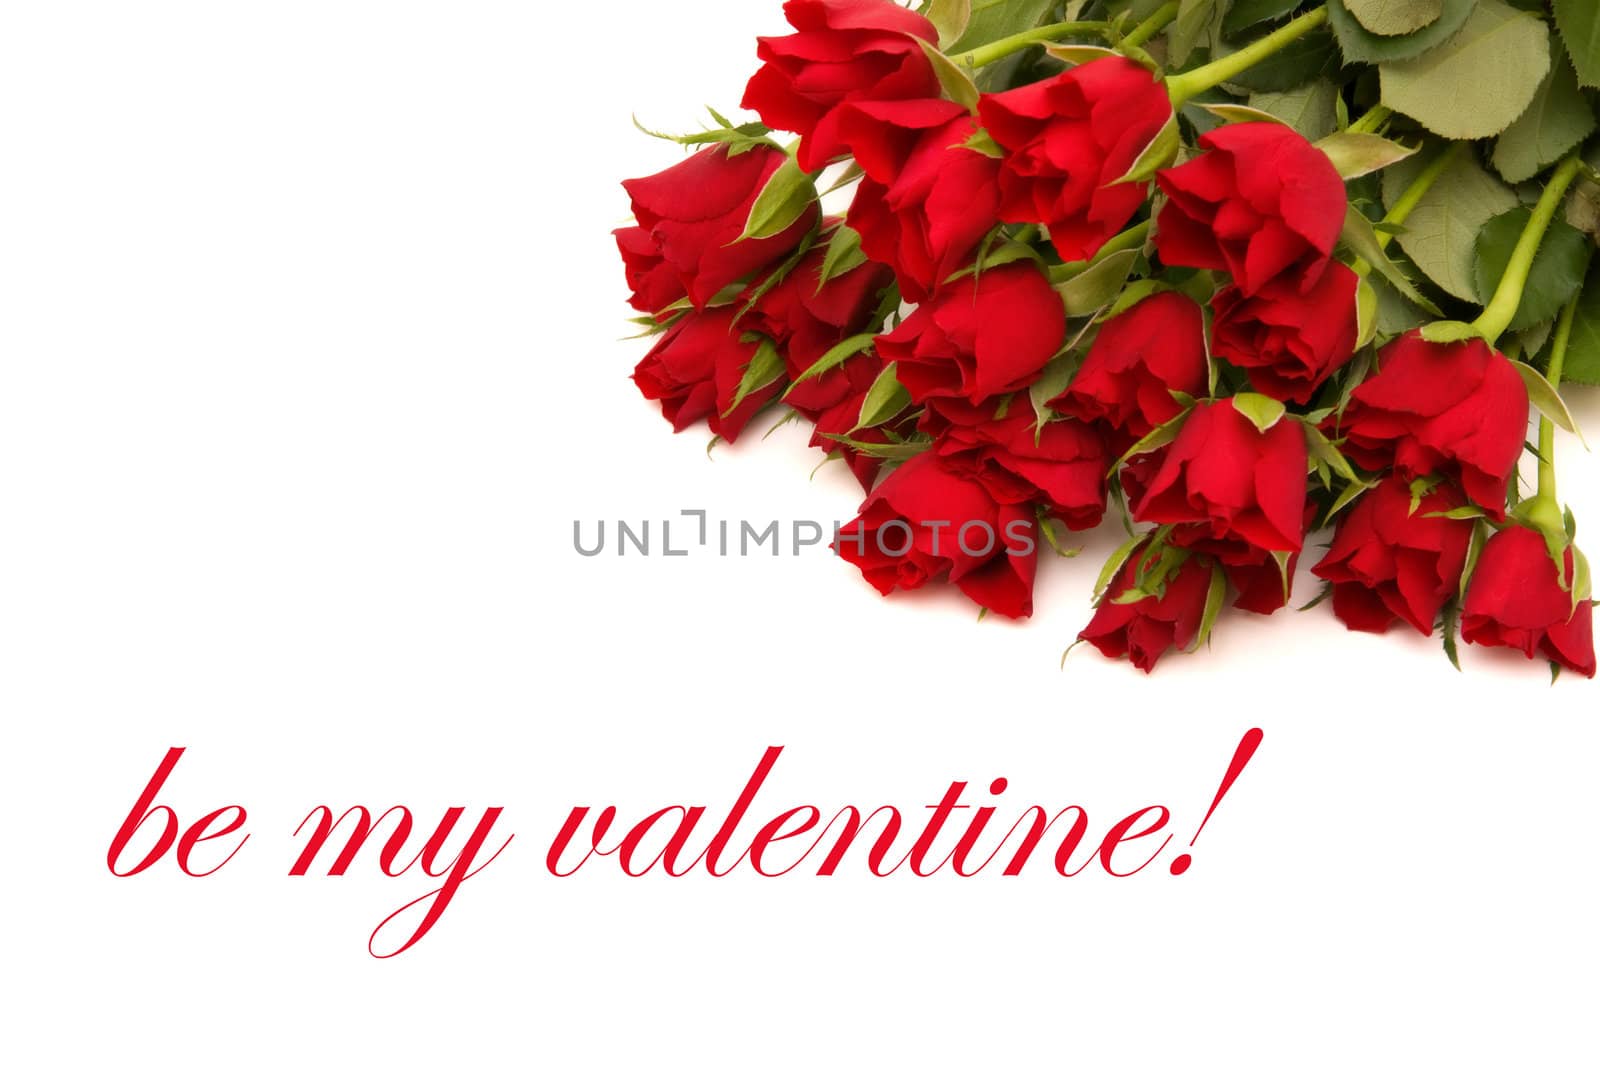 be my valentine by mereutaandrei